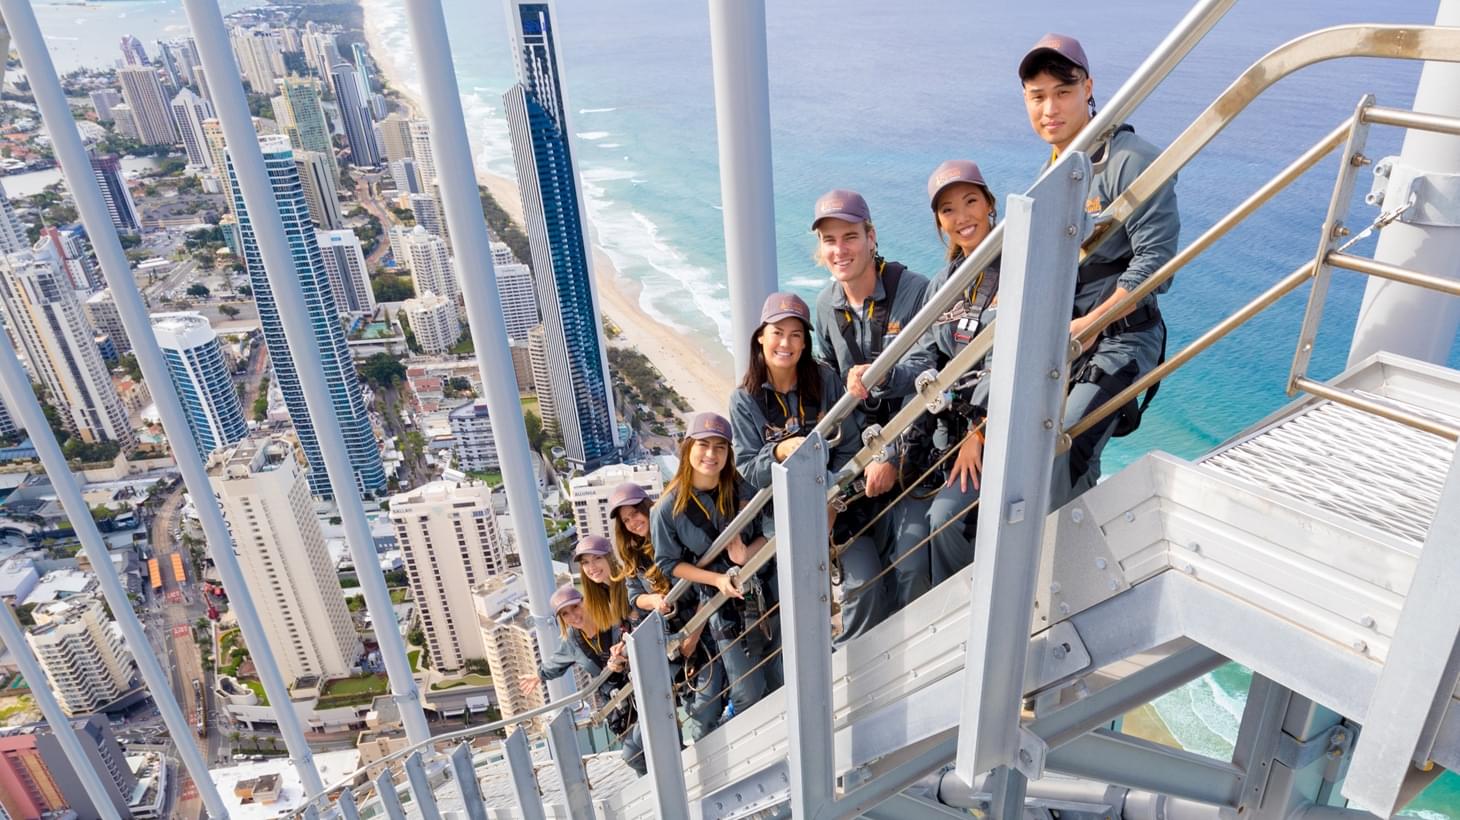 SkyPoint Climb Tickets, Gold Coast